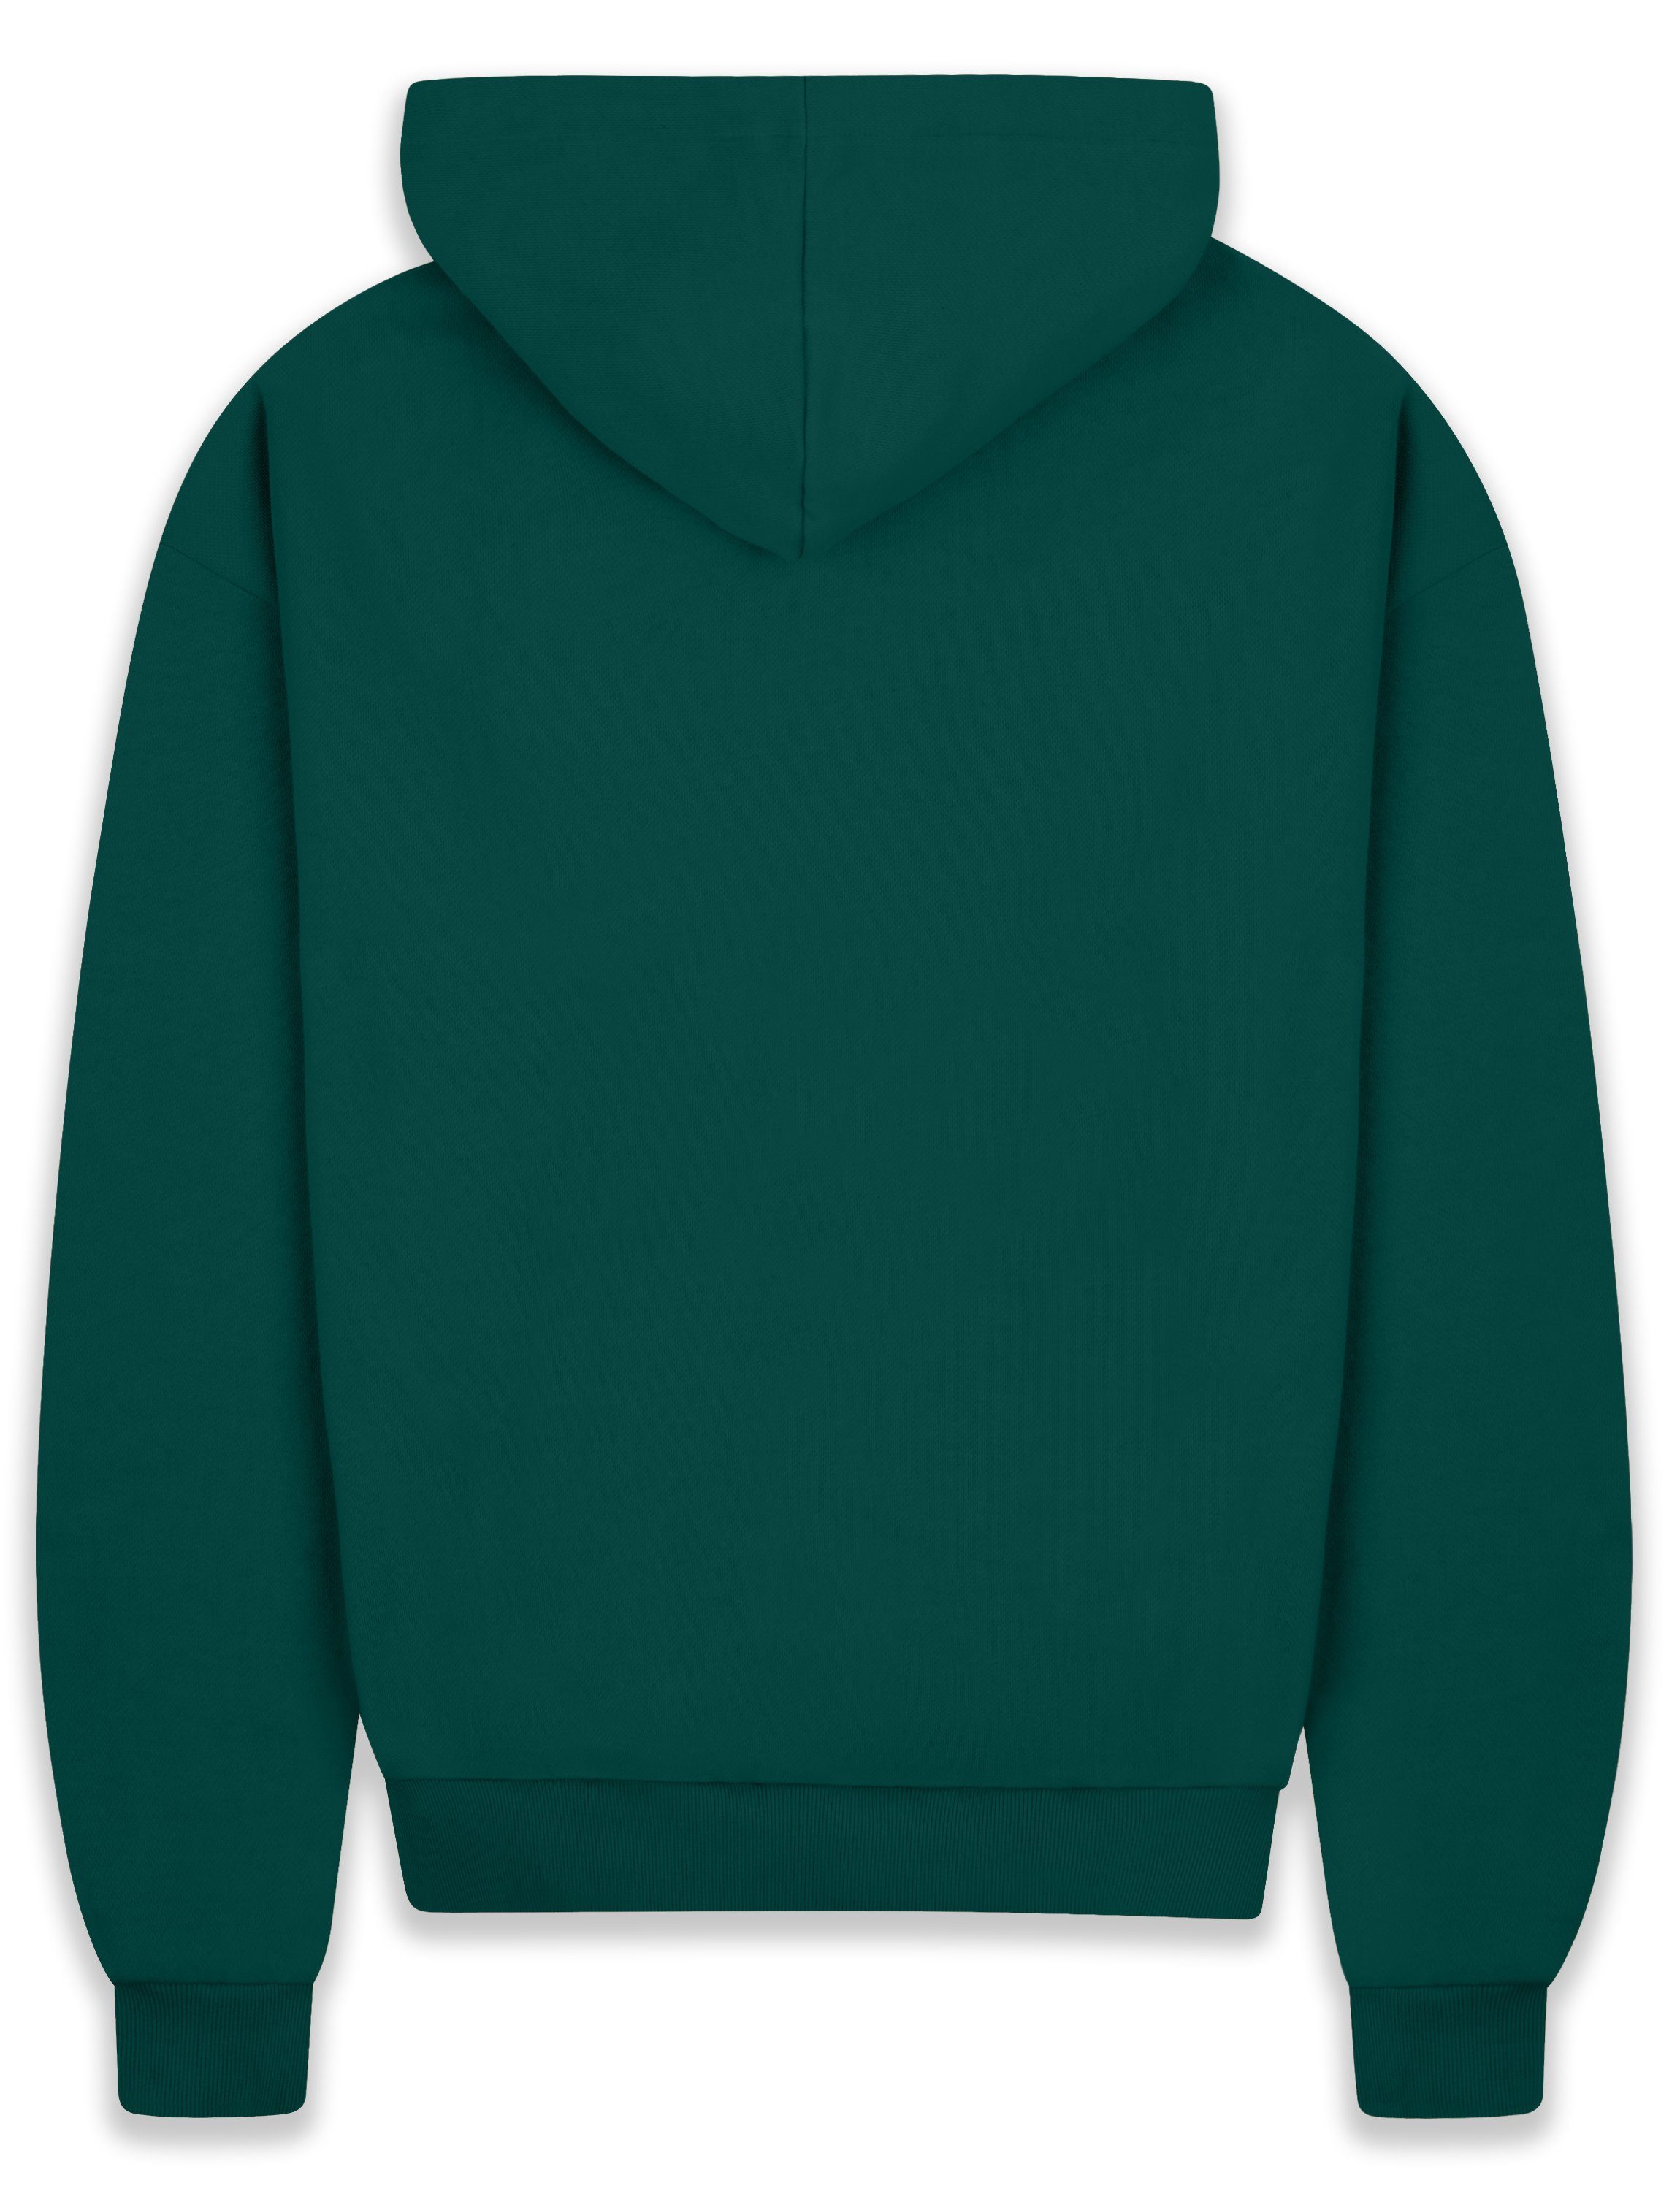 Dropsize Hoodie BR-H-1 Heavy Herren 430 Kapuzen-Pullover Herren GSM Green Hoodie Oversize Sweater